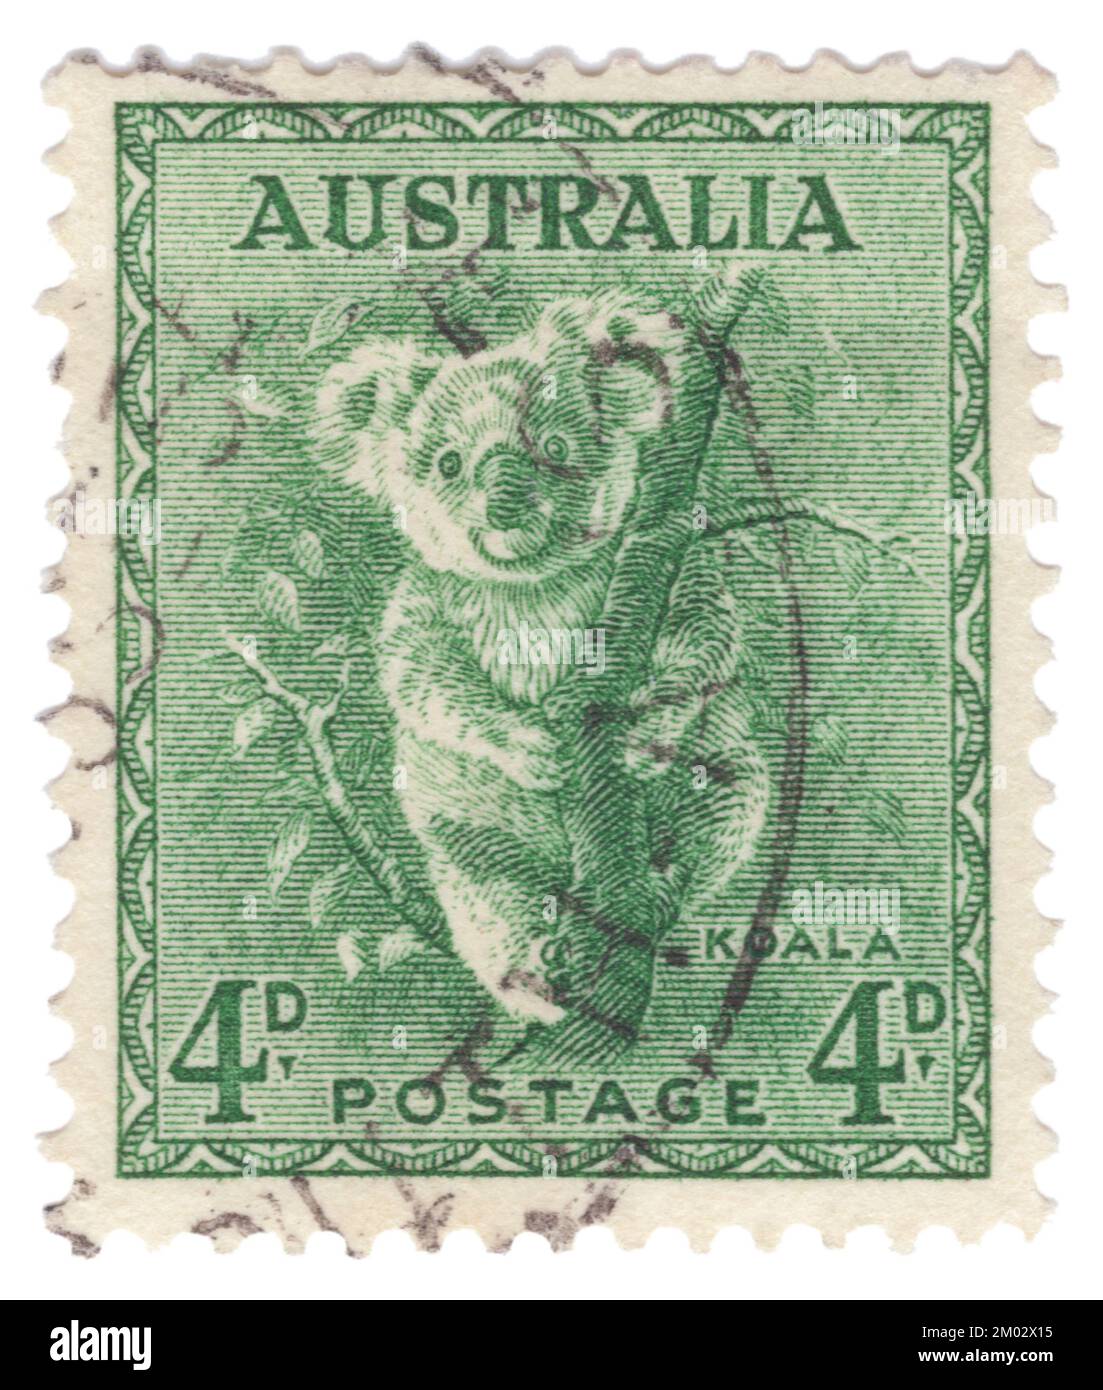 AUSTRALIEN – 1942: Eine grüne Briefmarke mit 4 Pence, die die Serien Koala, King George VI und Queen Elizabeth darstellt. Der Koala oder, genauer gesagt, der Koalabär (Phascolarctos cinereus) ist ein arborealer, pflanzenfressender Beutelmist aus Australien. Es ist der einzige noch existierende Vertreter der Familie Phascolarctidae und seine engsten lebenden Verwandten sind die Wombats. Der Koala findet sich in Küstengebieten der östlichen und südlichen Regionen des Festlands in Queensland, New South Wales, Victoria und Südaustralien Stockfoto